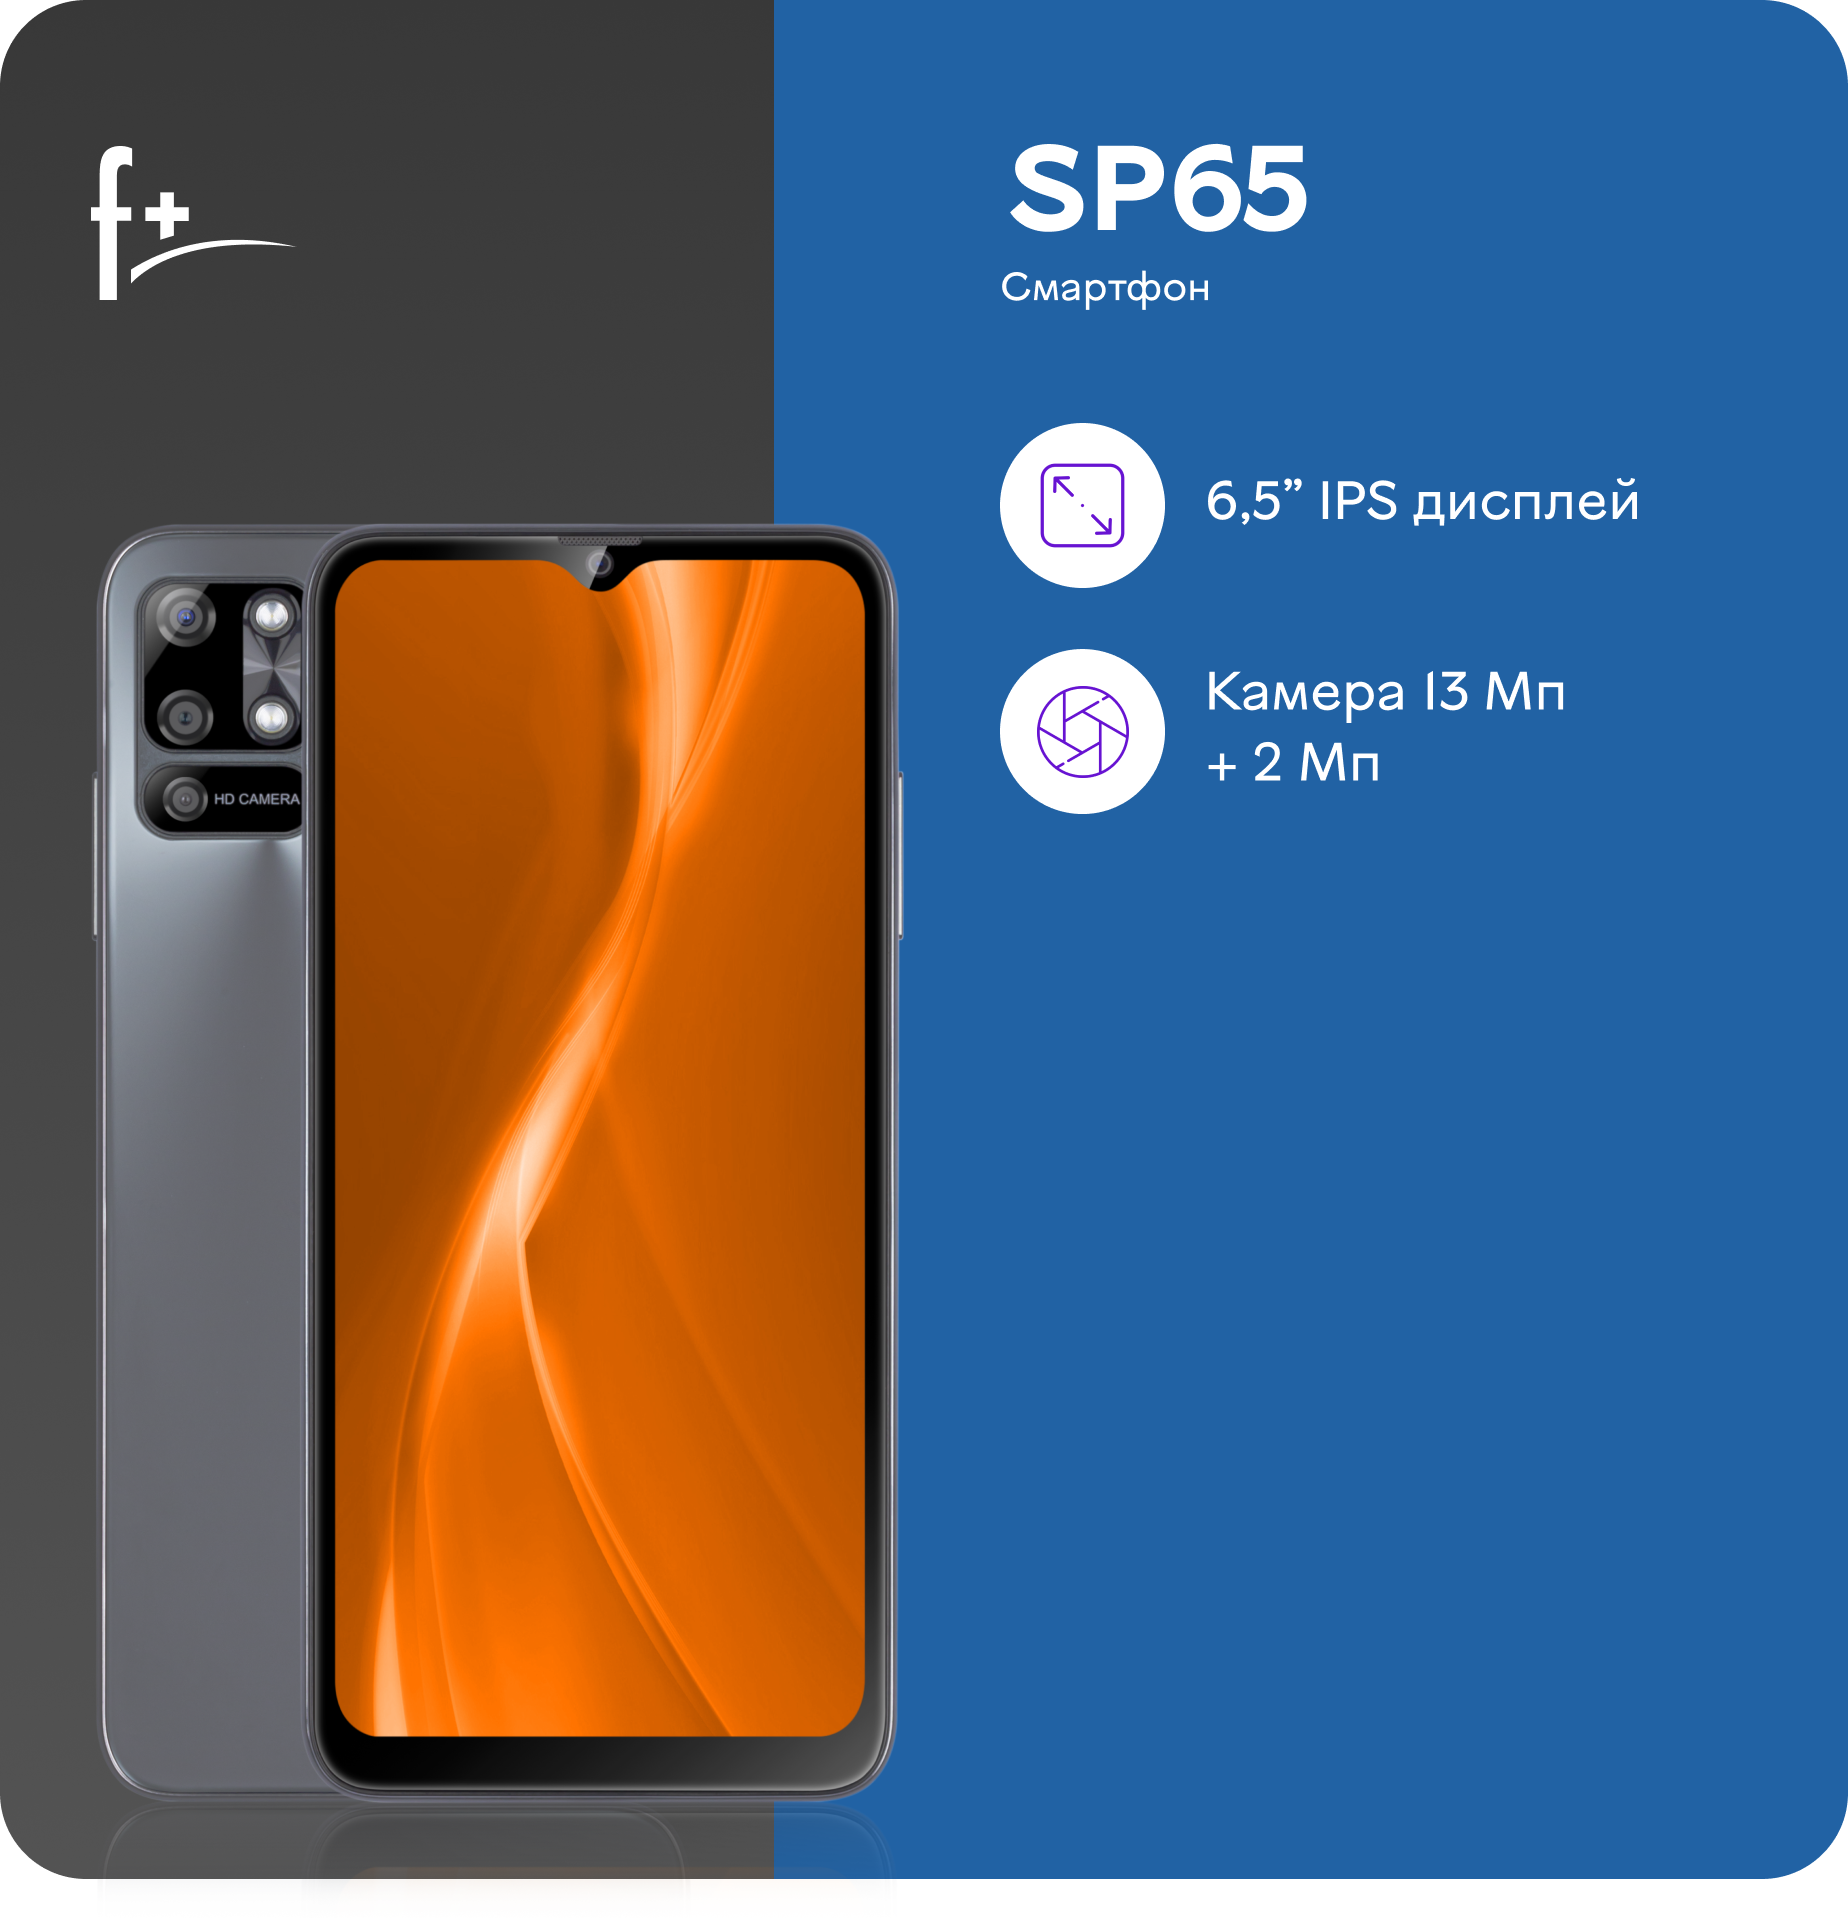 Смартфон F+ SP65